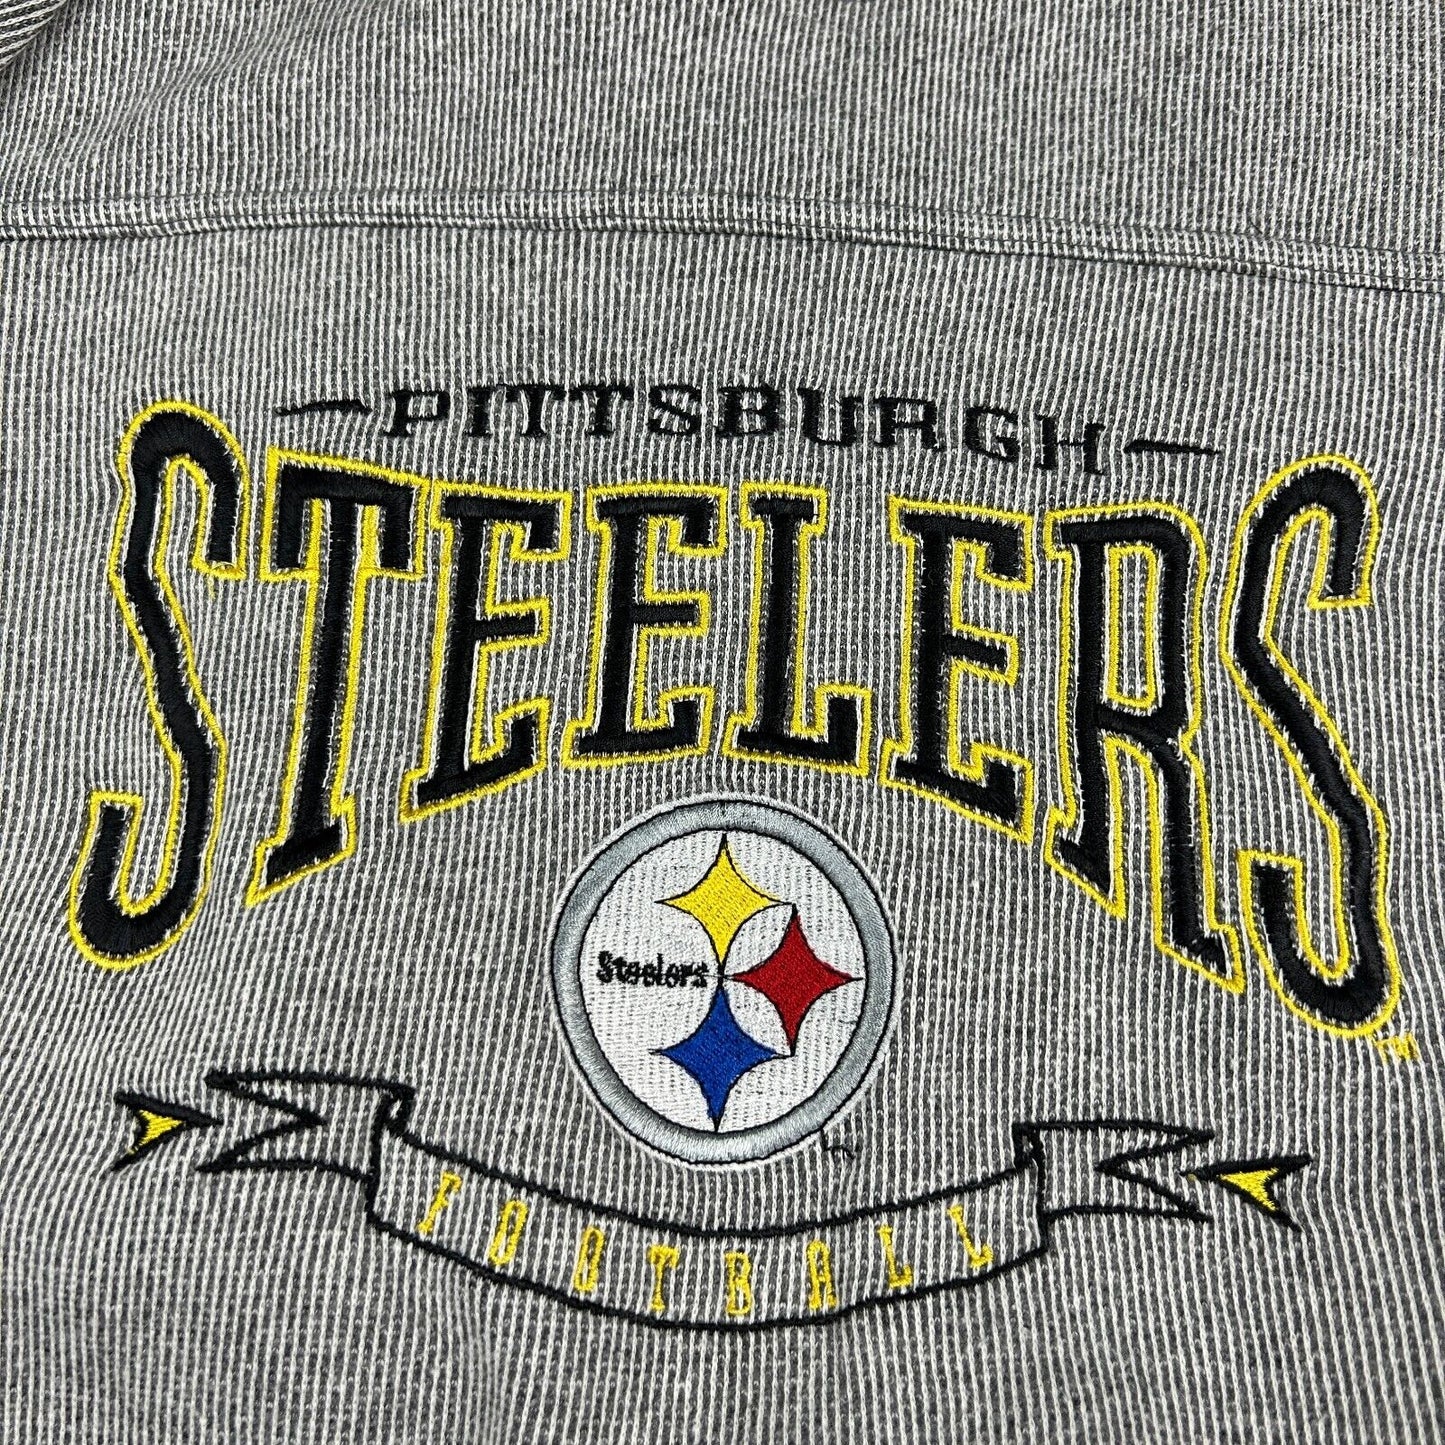 VINTAGE 90s Pittsburgh Steelers NFL Lee Sport Crewneck Sweater sz Medium Adult